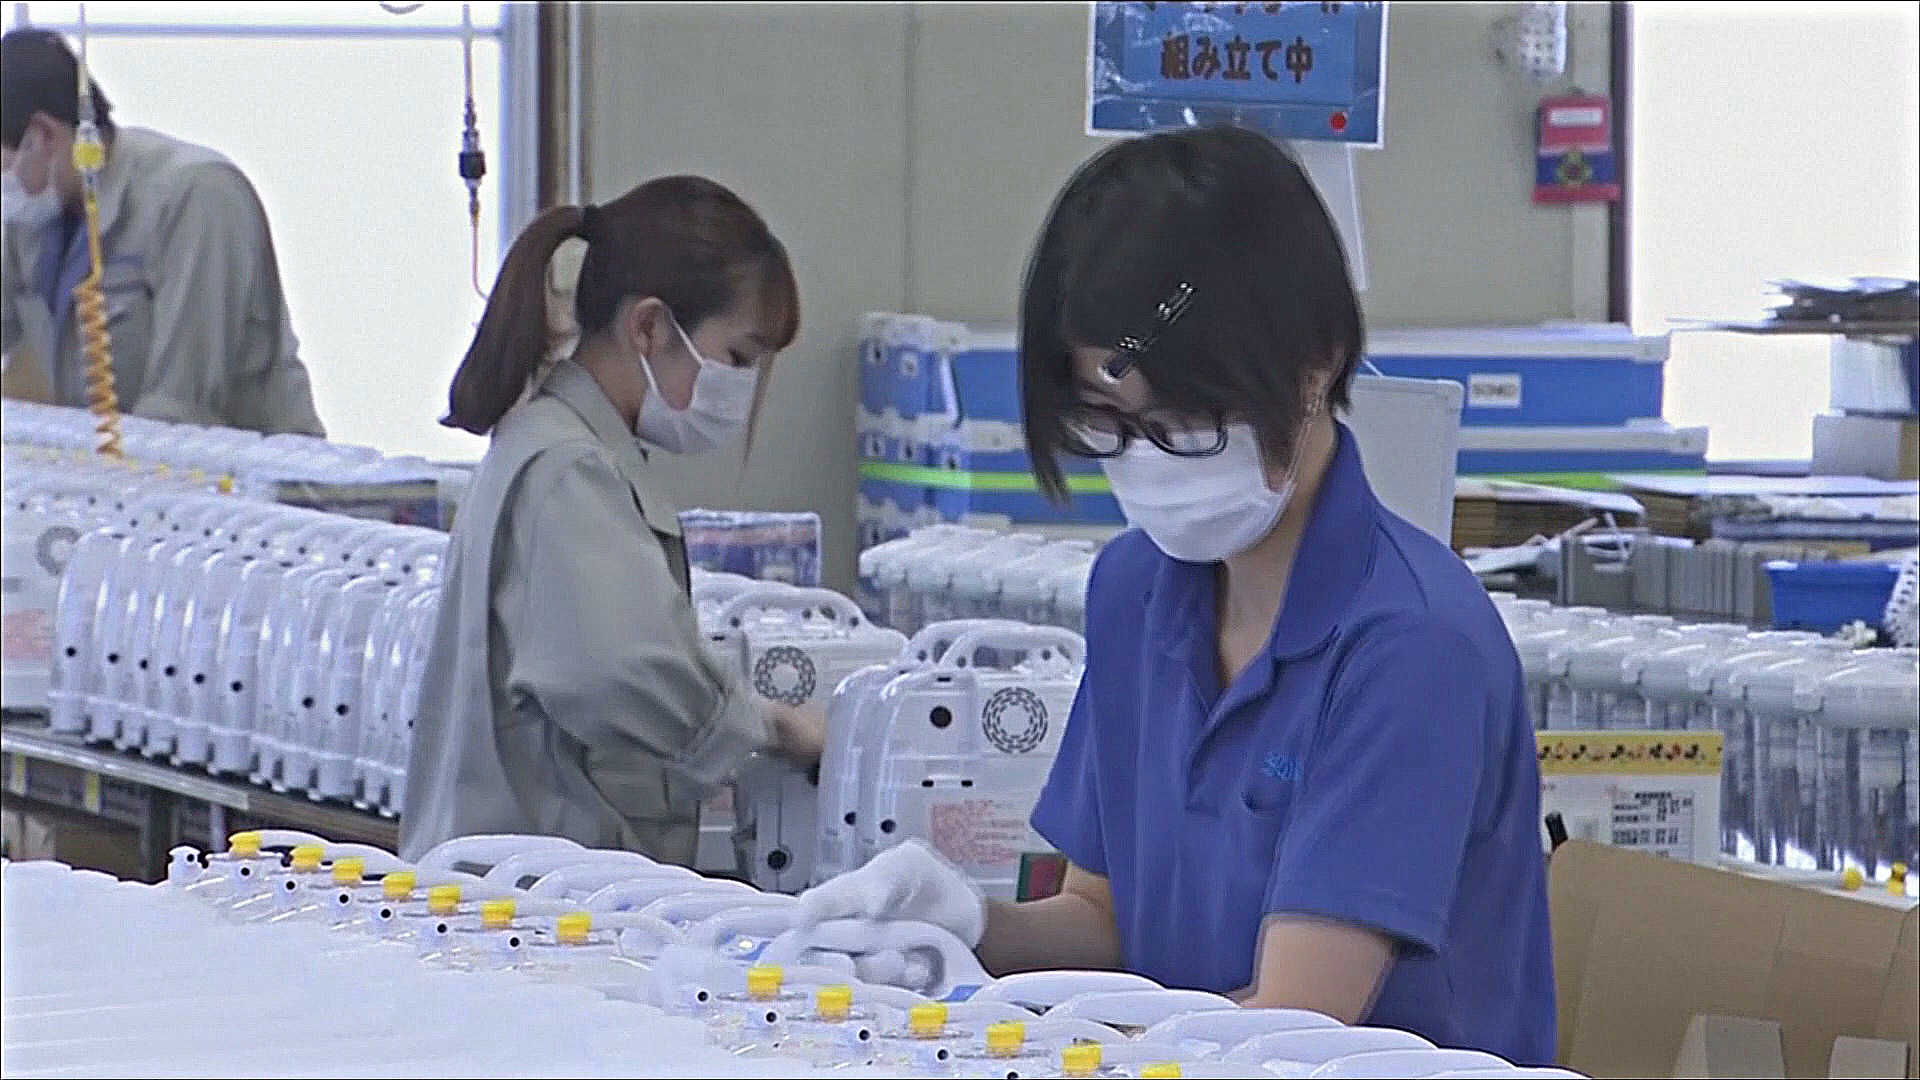 Японские компании начали массово повышать зарплаты, но не все